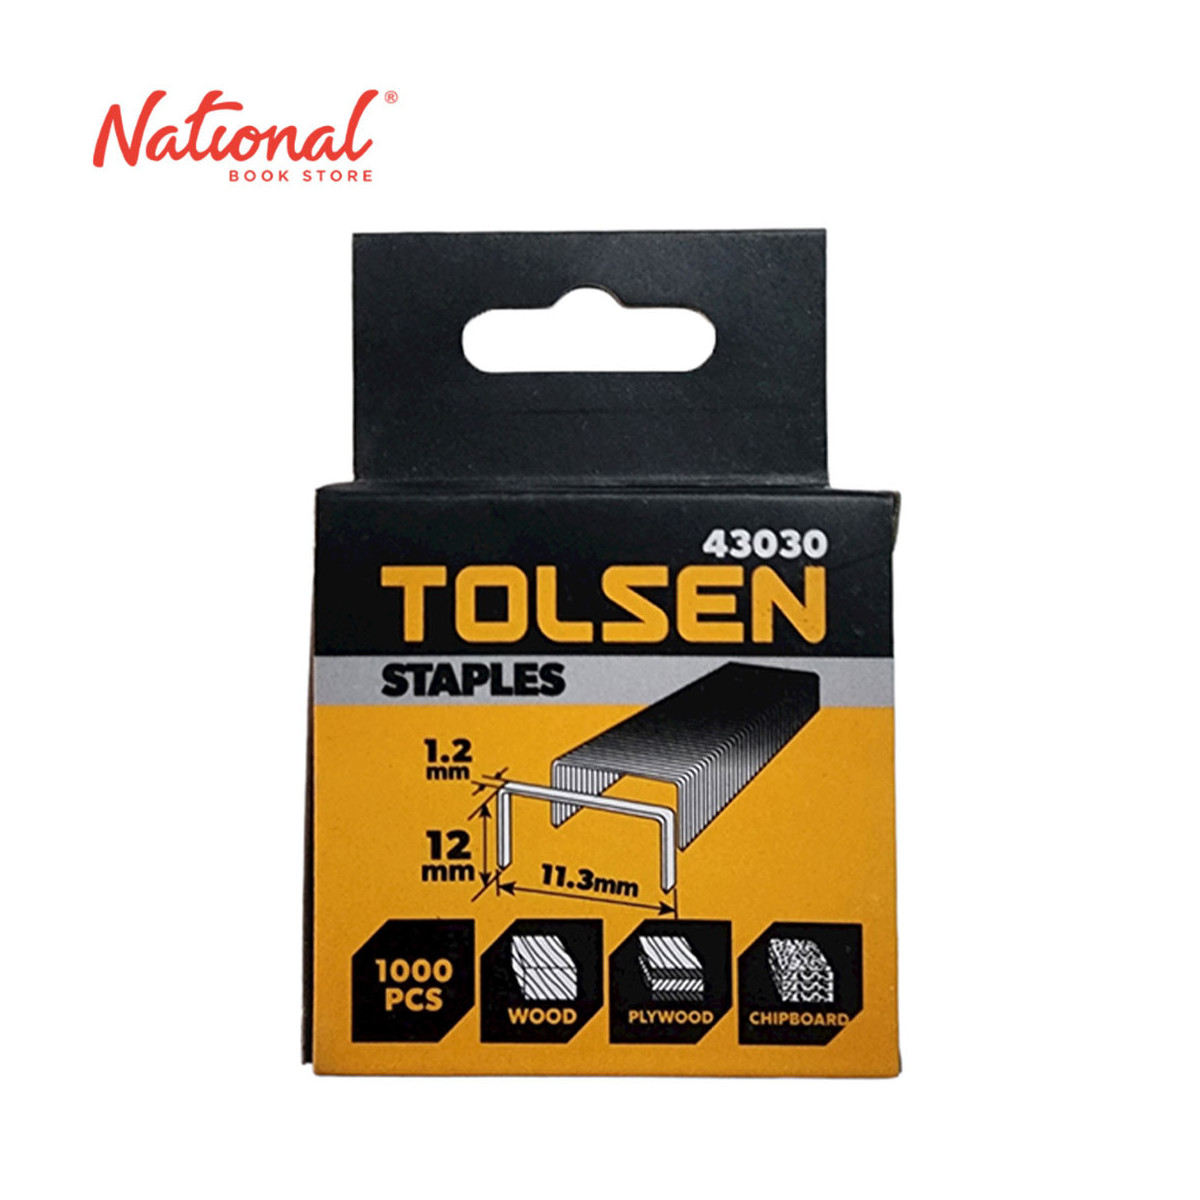 Tolsen Tacker Wire 43030 1.2x12mm - Home & Office Essentials